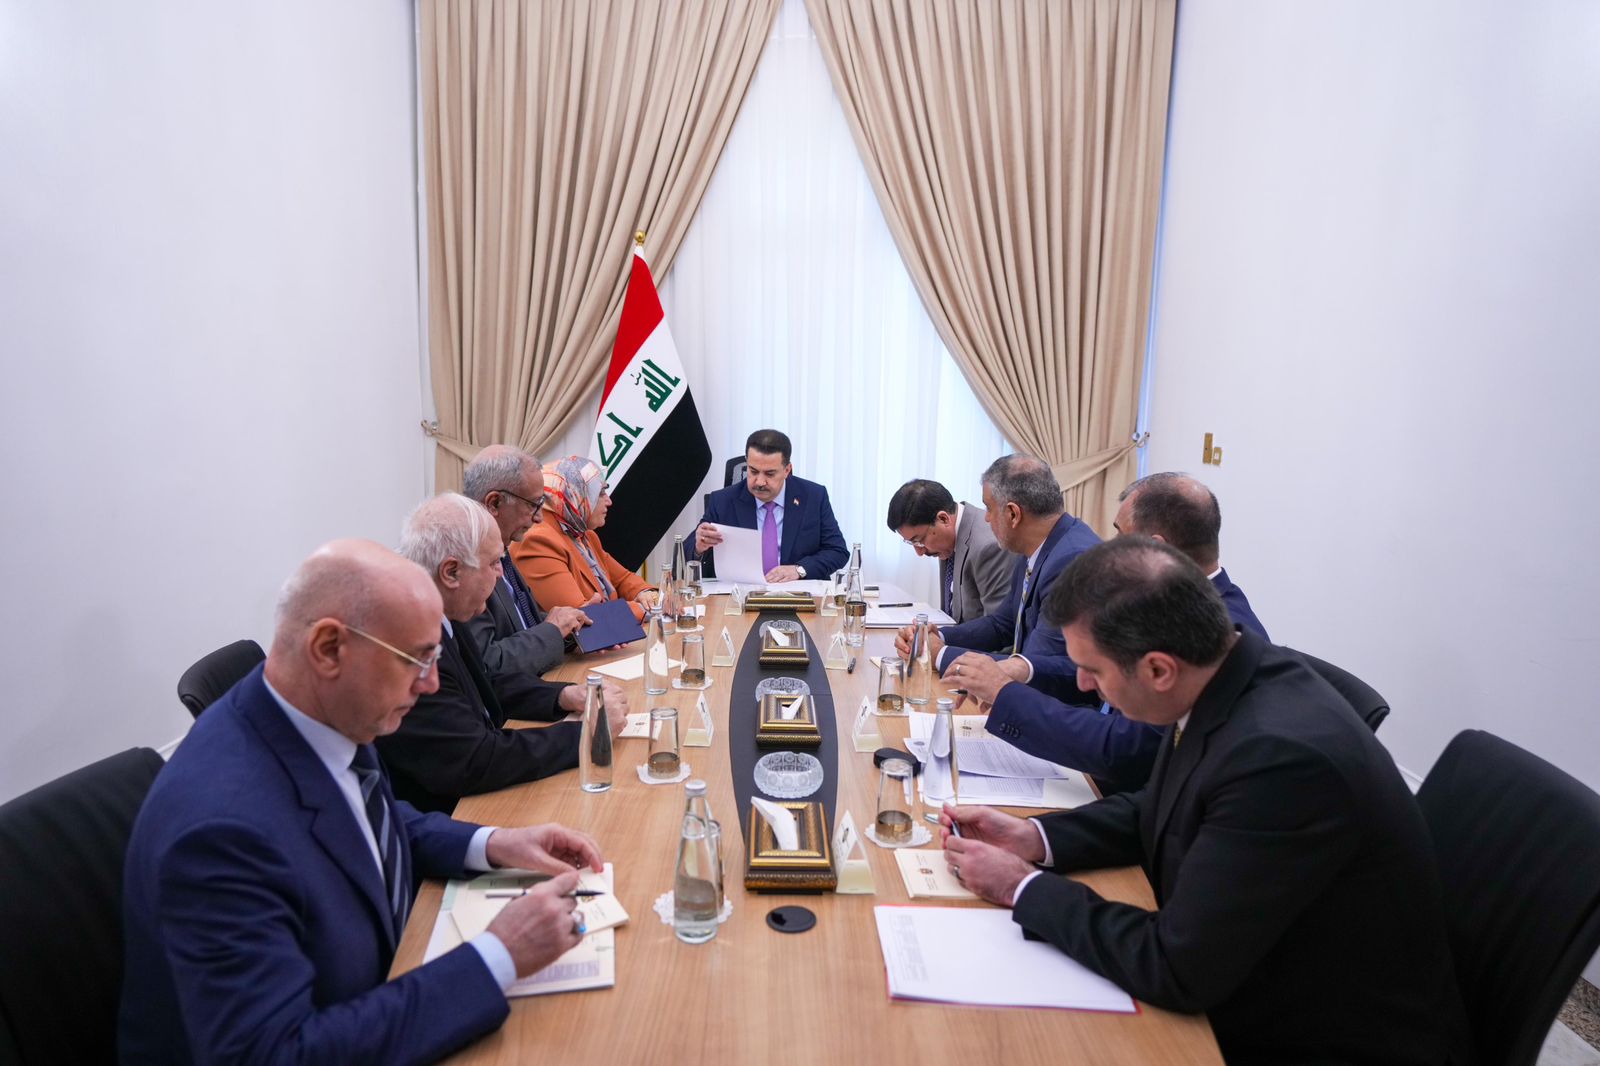 رئيس مجلس الوزراء السيد محمد شياع السوداني يرأس اجتماعاً لمتابعة عمل المصرف العراقي للتجارة TBI مشيراً الى اهمية دور المصرف في دعم وتنشيط الاقتصاد العراقي